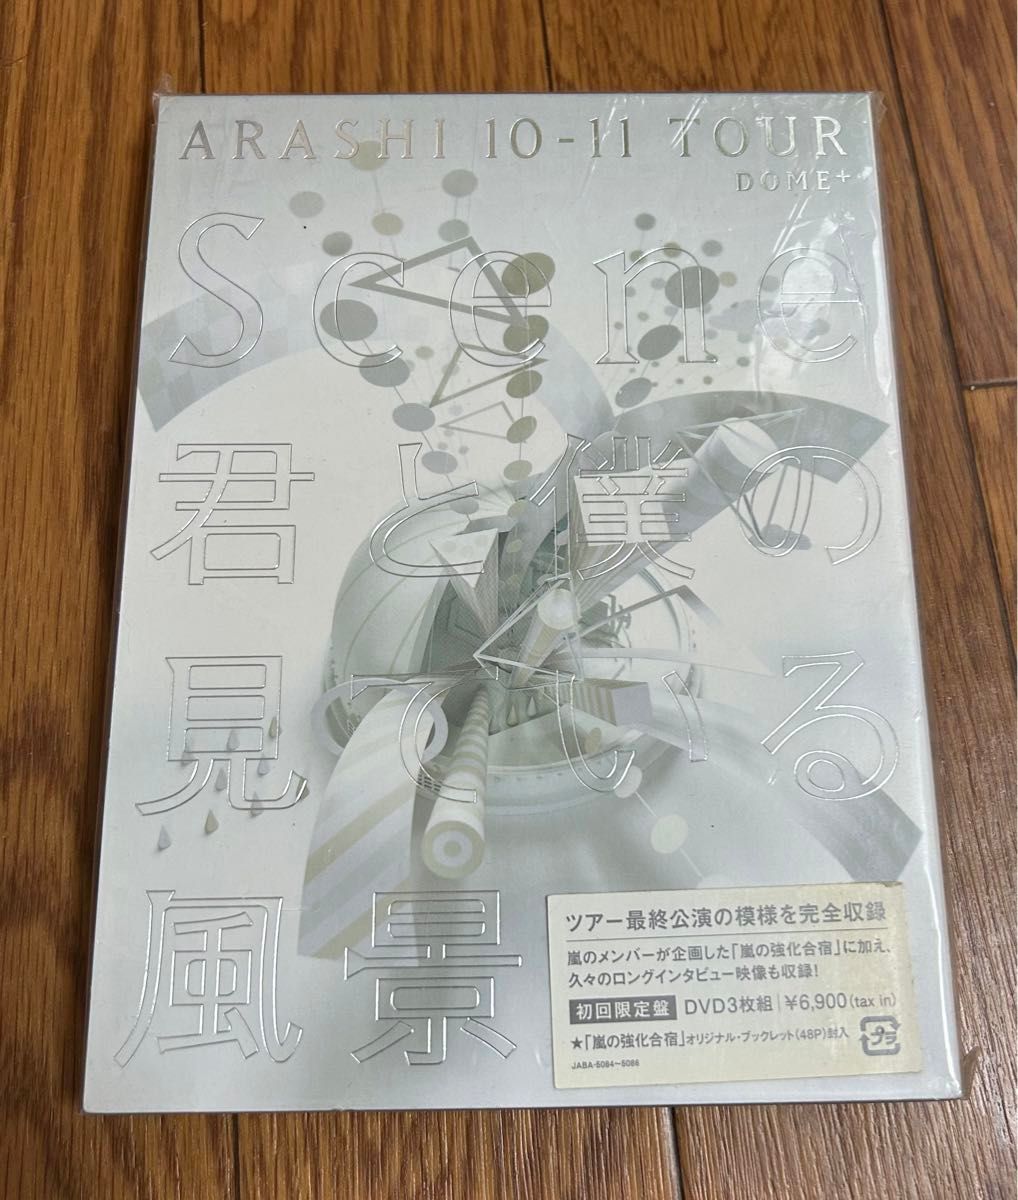 嵐 3DVD 【ARASHI 10-11 TOUR “Scene〜君と僕の見ている風景〜 DOME＋】 ■初回盤★プレミアム仕様